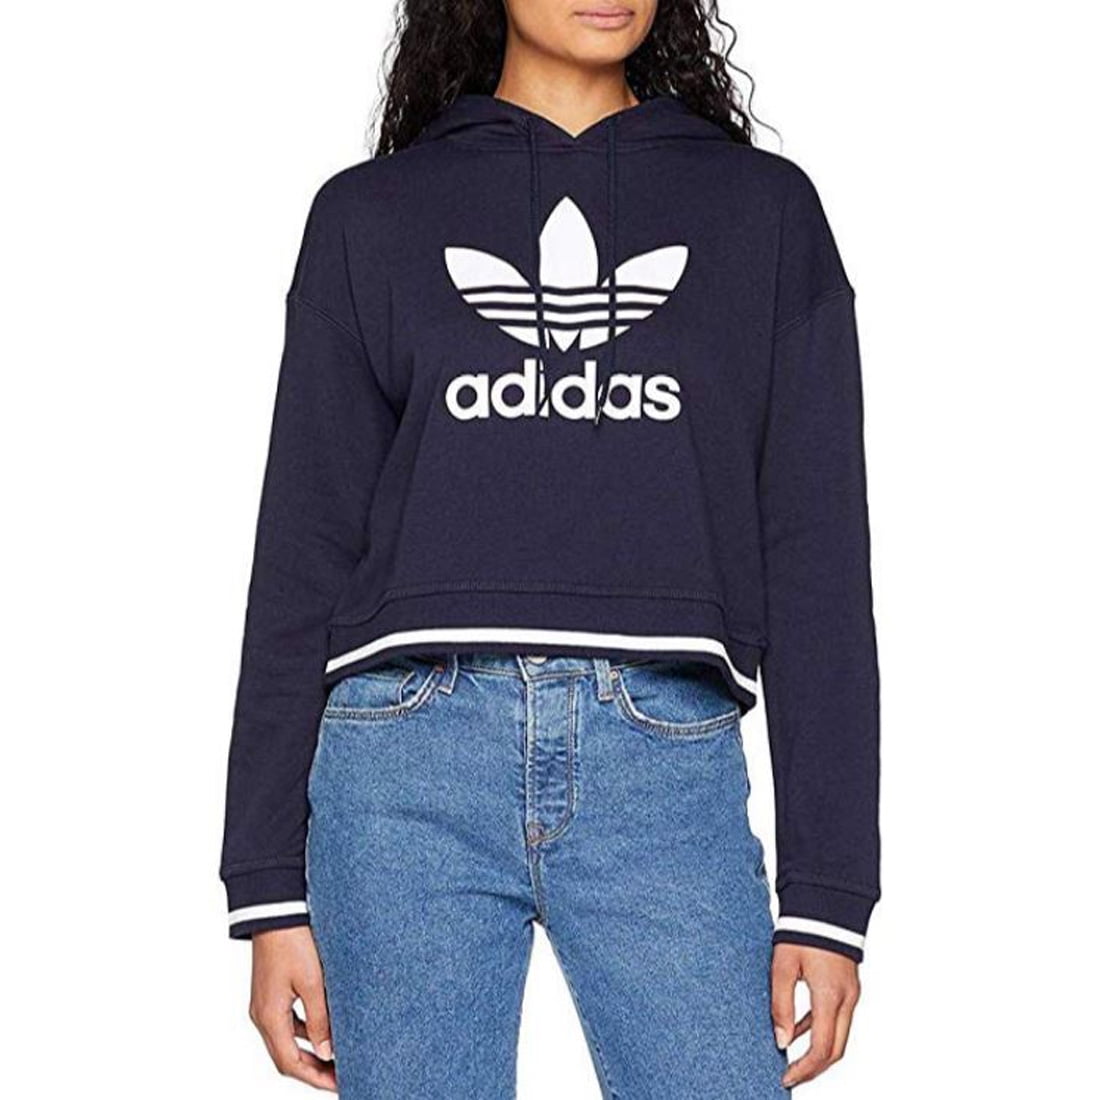 Adidas Originals Icons Cropped Hoodie,Legend - Walmart.com